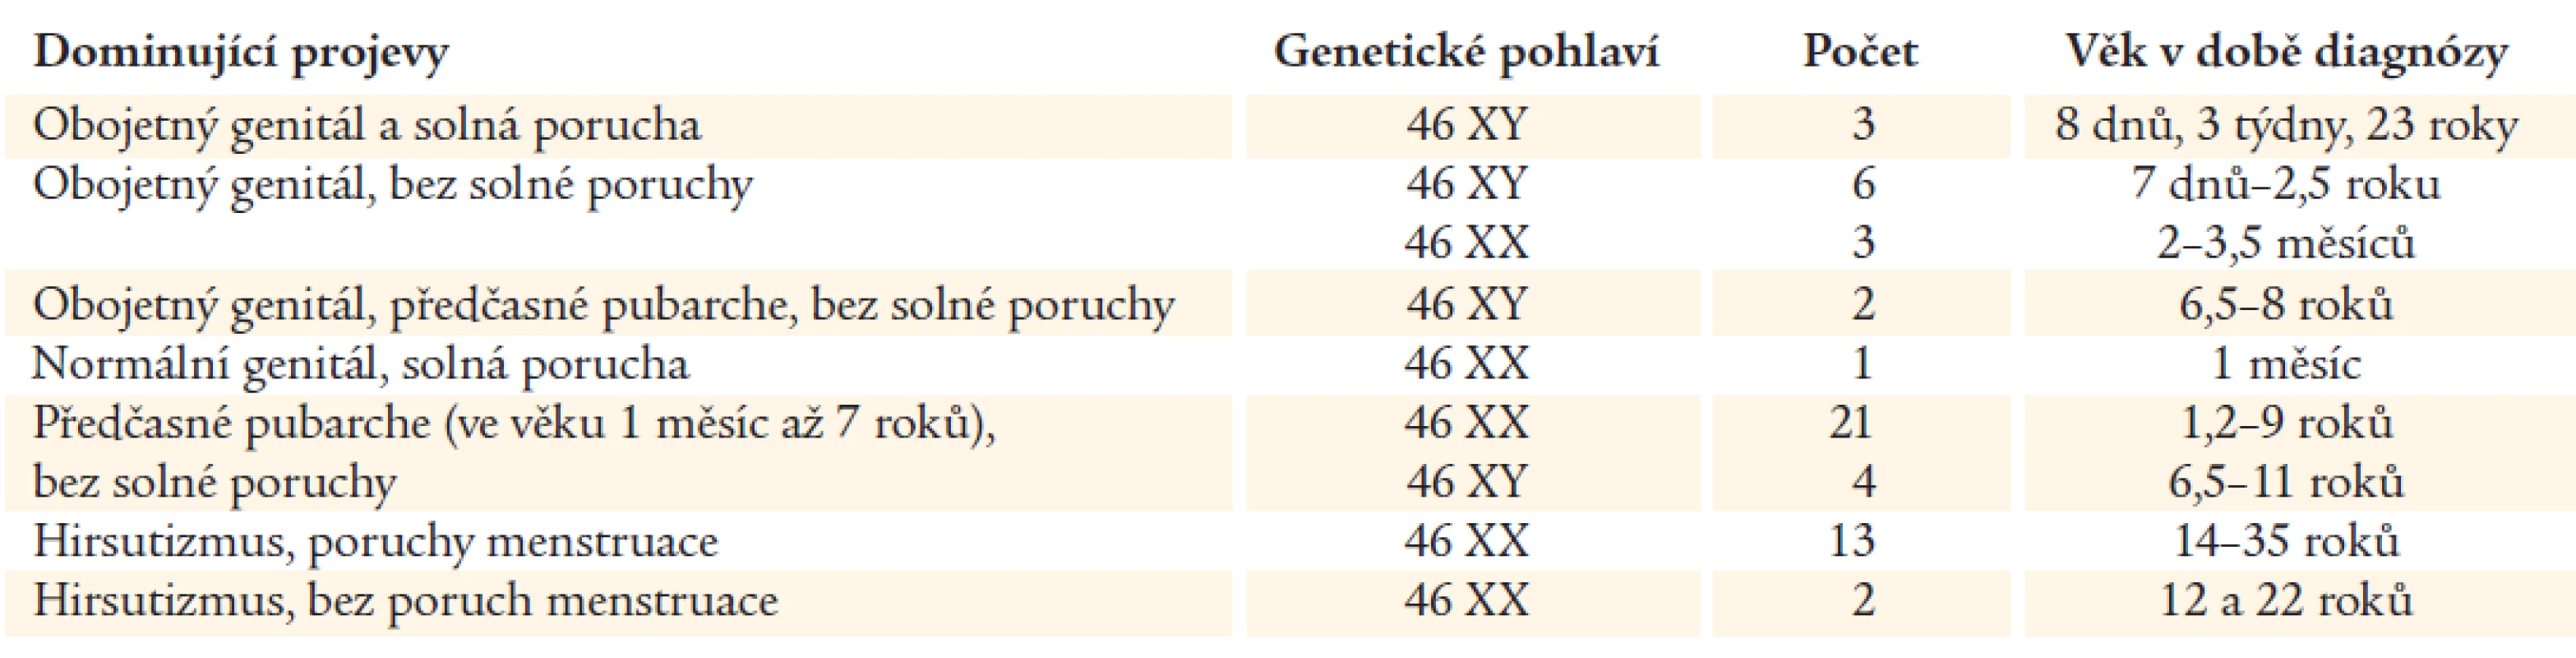 Klinické projevy ve skupině pacientů s geneticky prokázaným deficitem 3βHSD. Podle Lutfallaha et al (10).